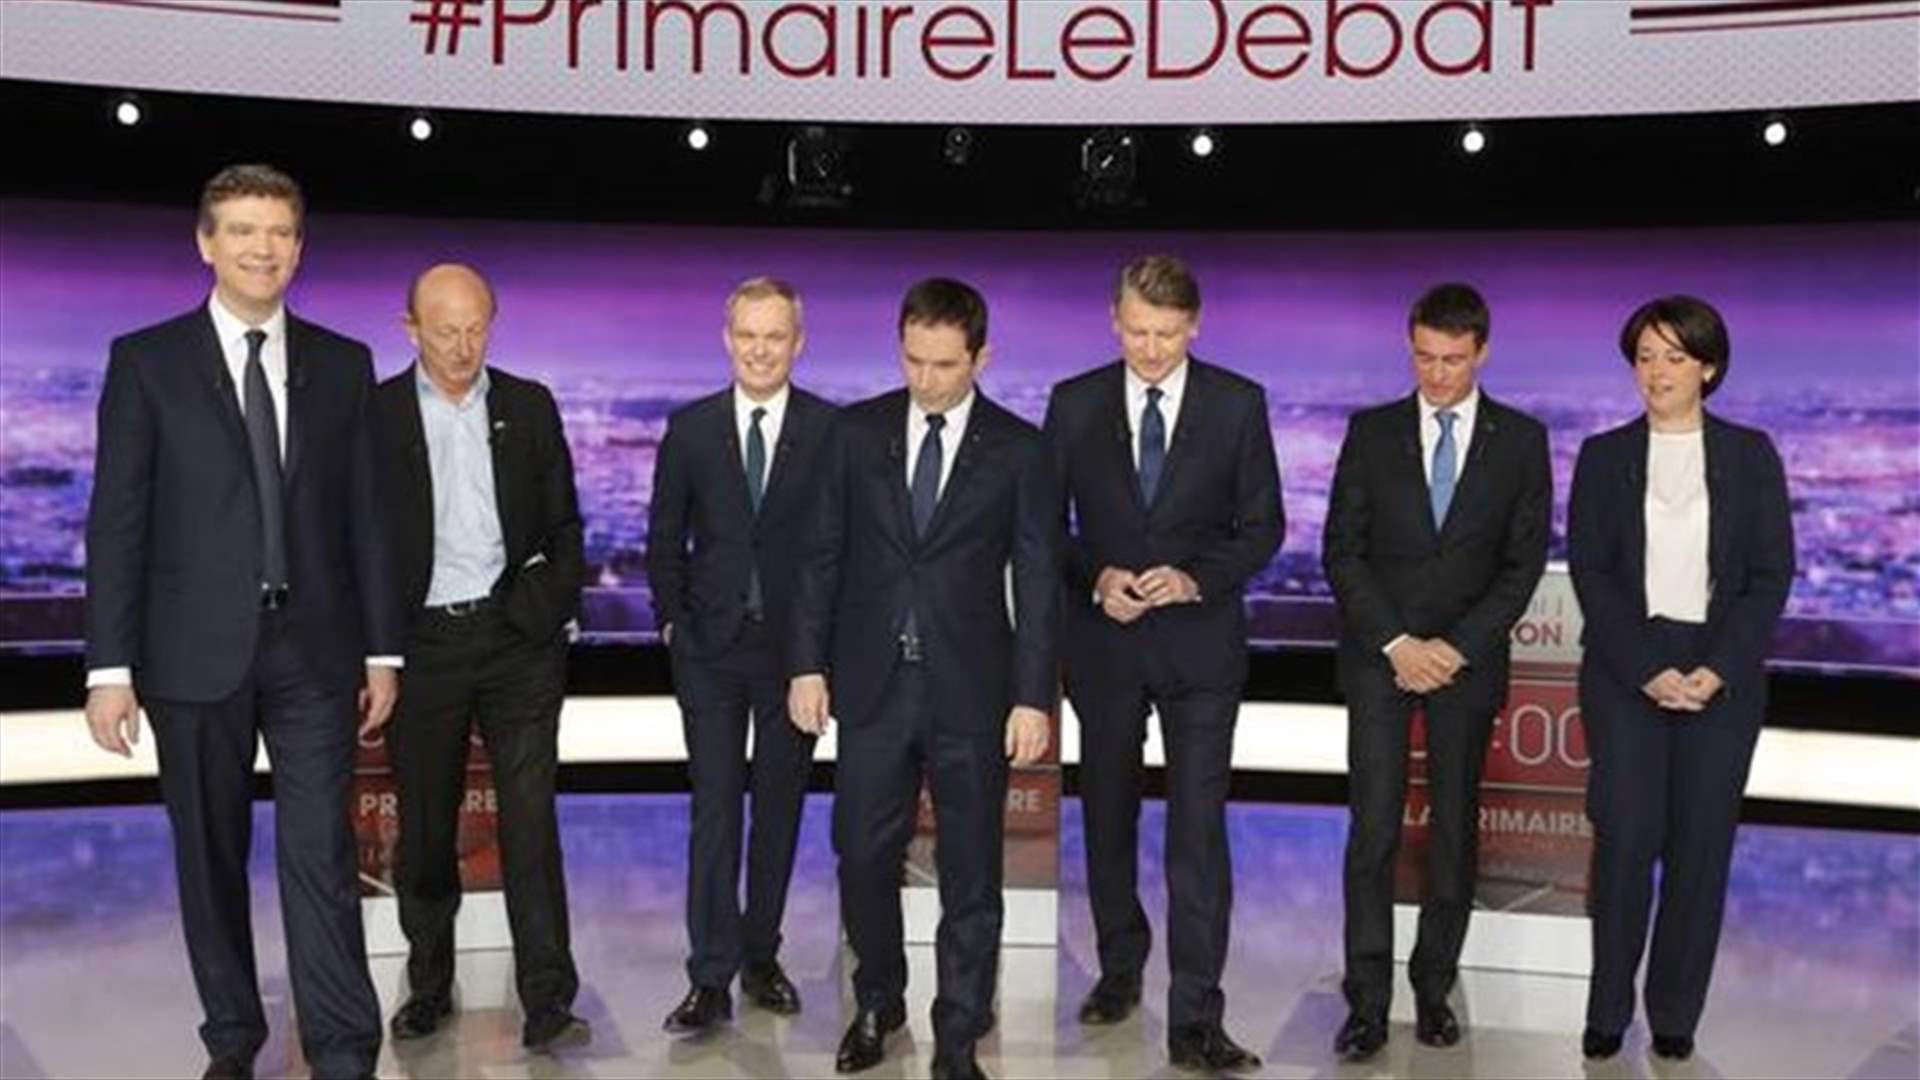 من هو المرشح الفرنسي اليساري الوحيد الذي لم ينتقد هولاند؟